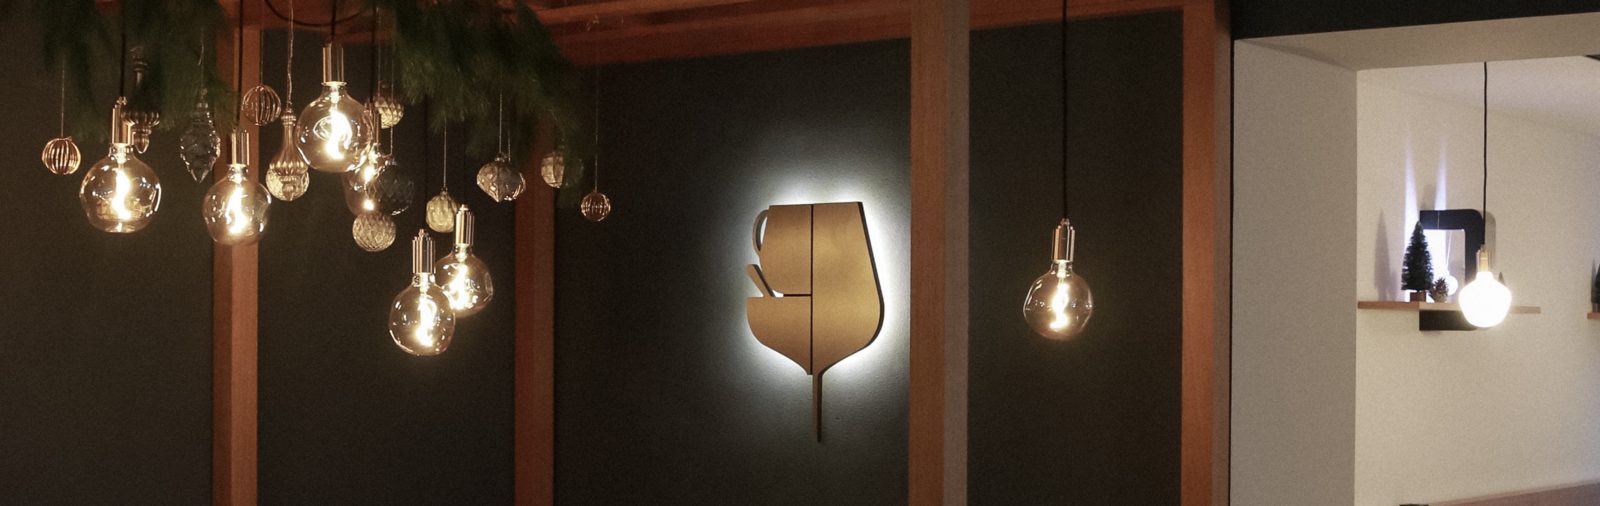 Innengestaltung Cafe, Laube, beleuchtetes Logo, weihnachtlich dekoriert